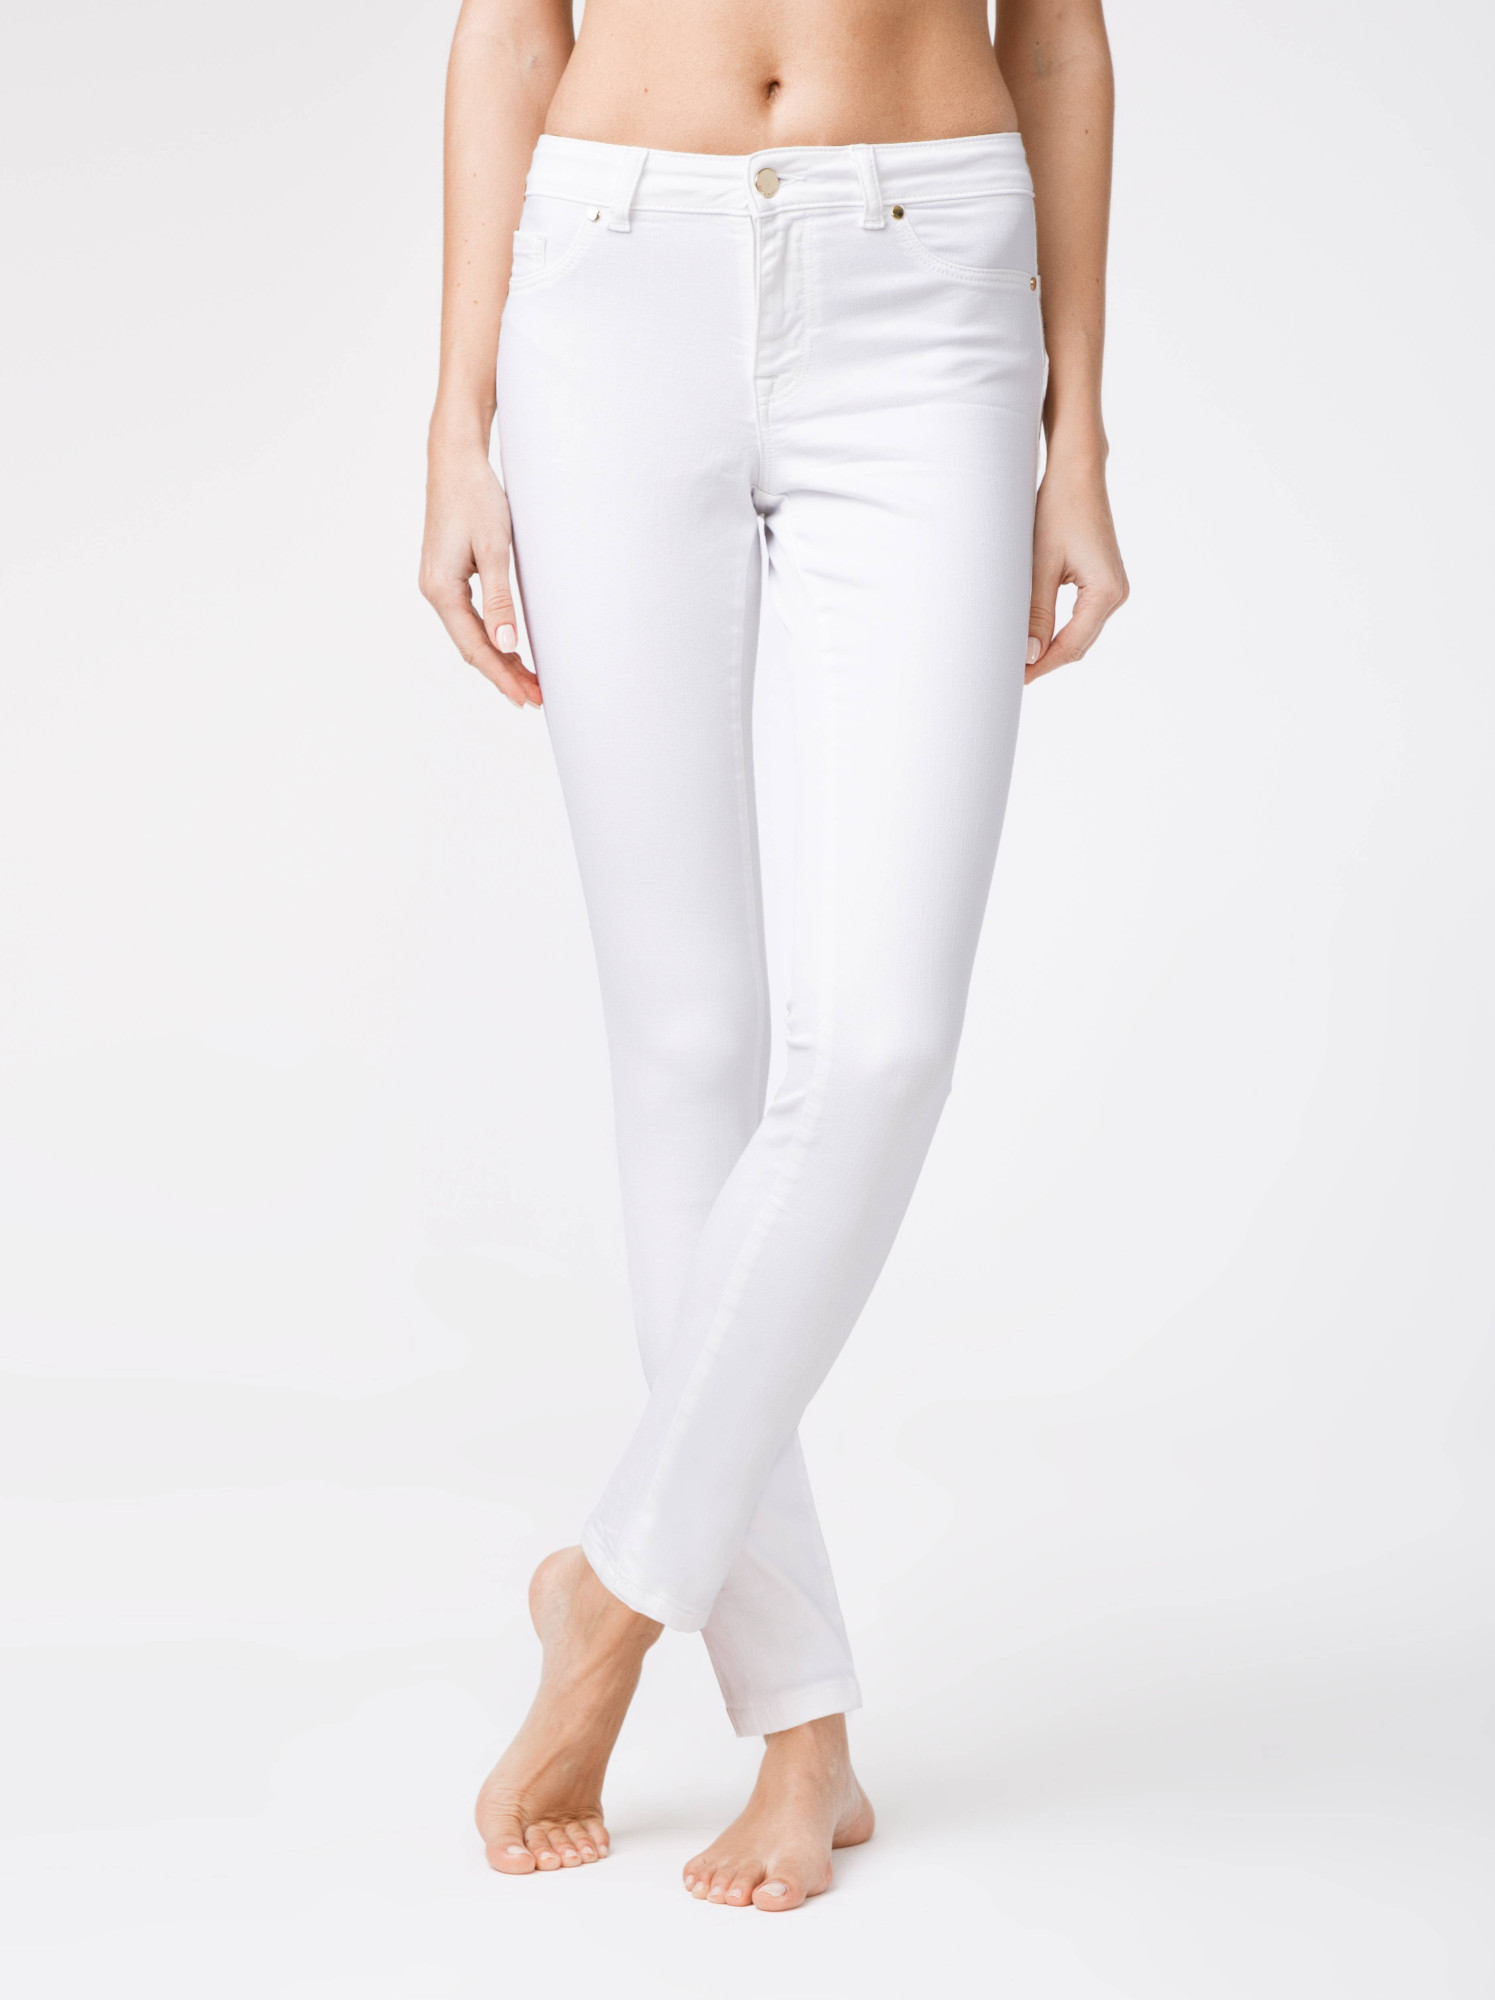 CONTE Jeans White 170-94/S